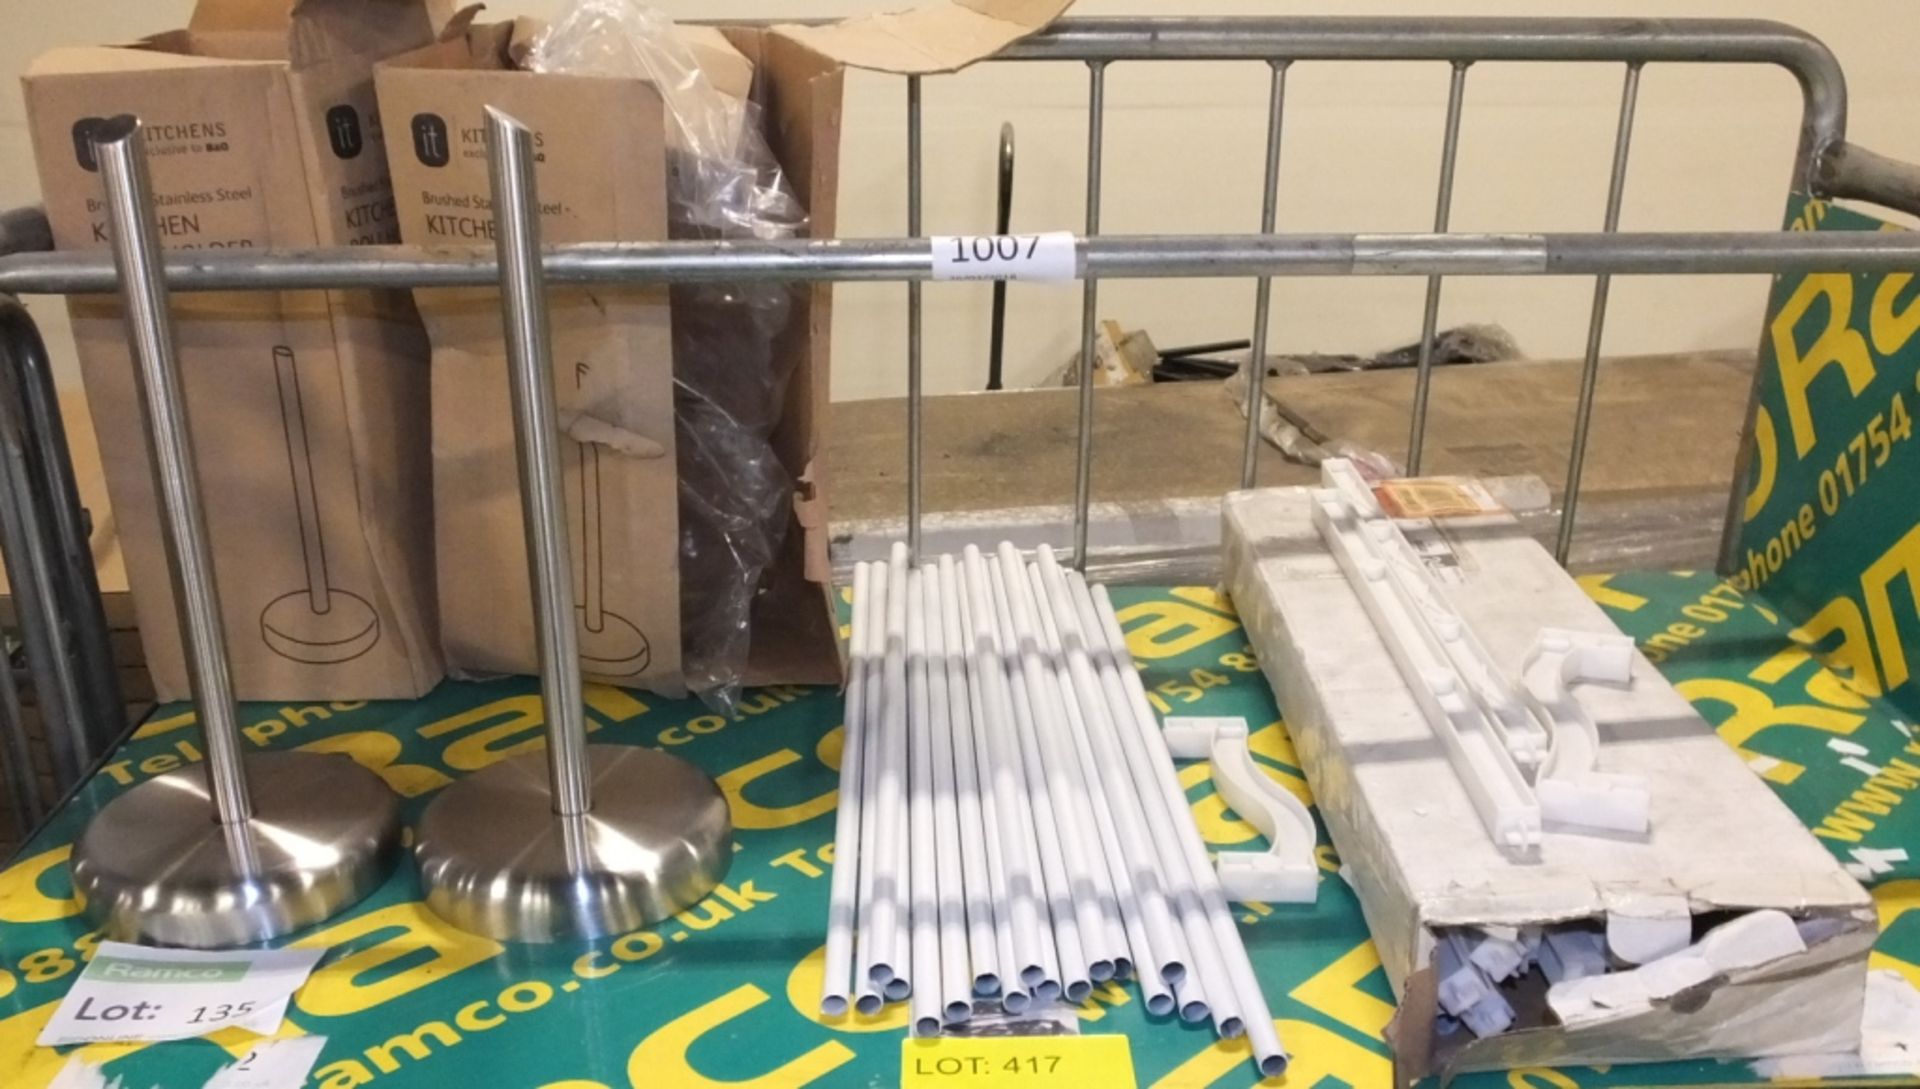 Shelf assembly, 2 kitchen roll holders